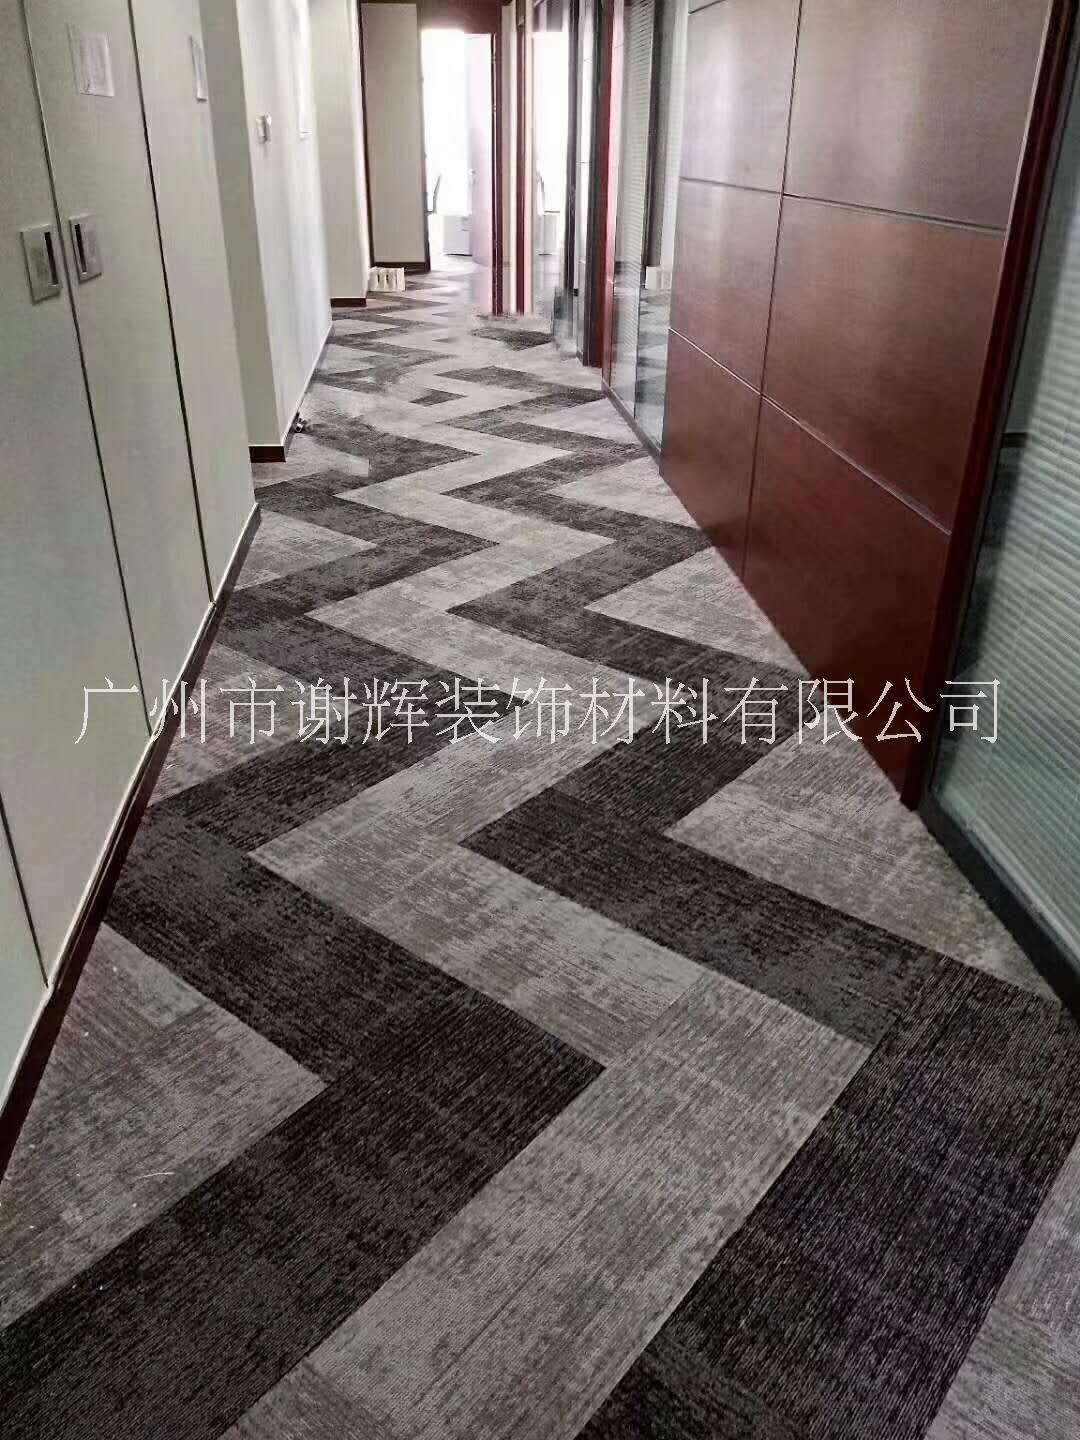 酒店尼龙地毯 酒店走道地毯  酒店房间地毯